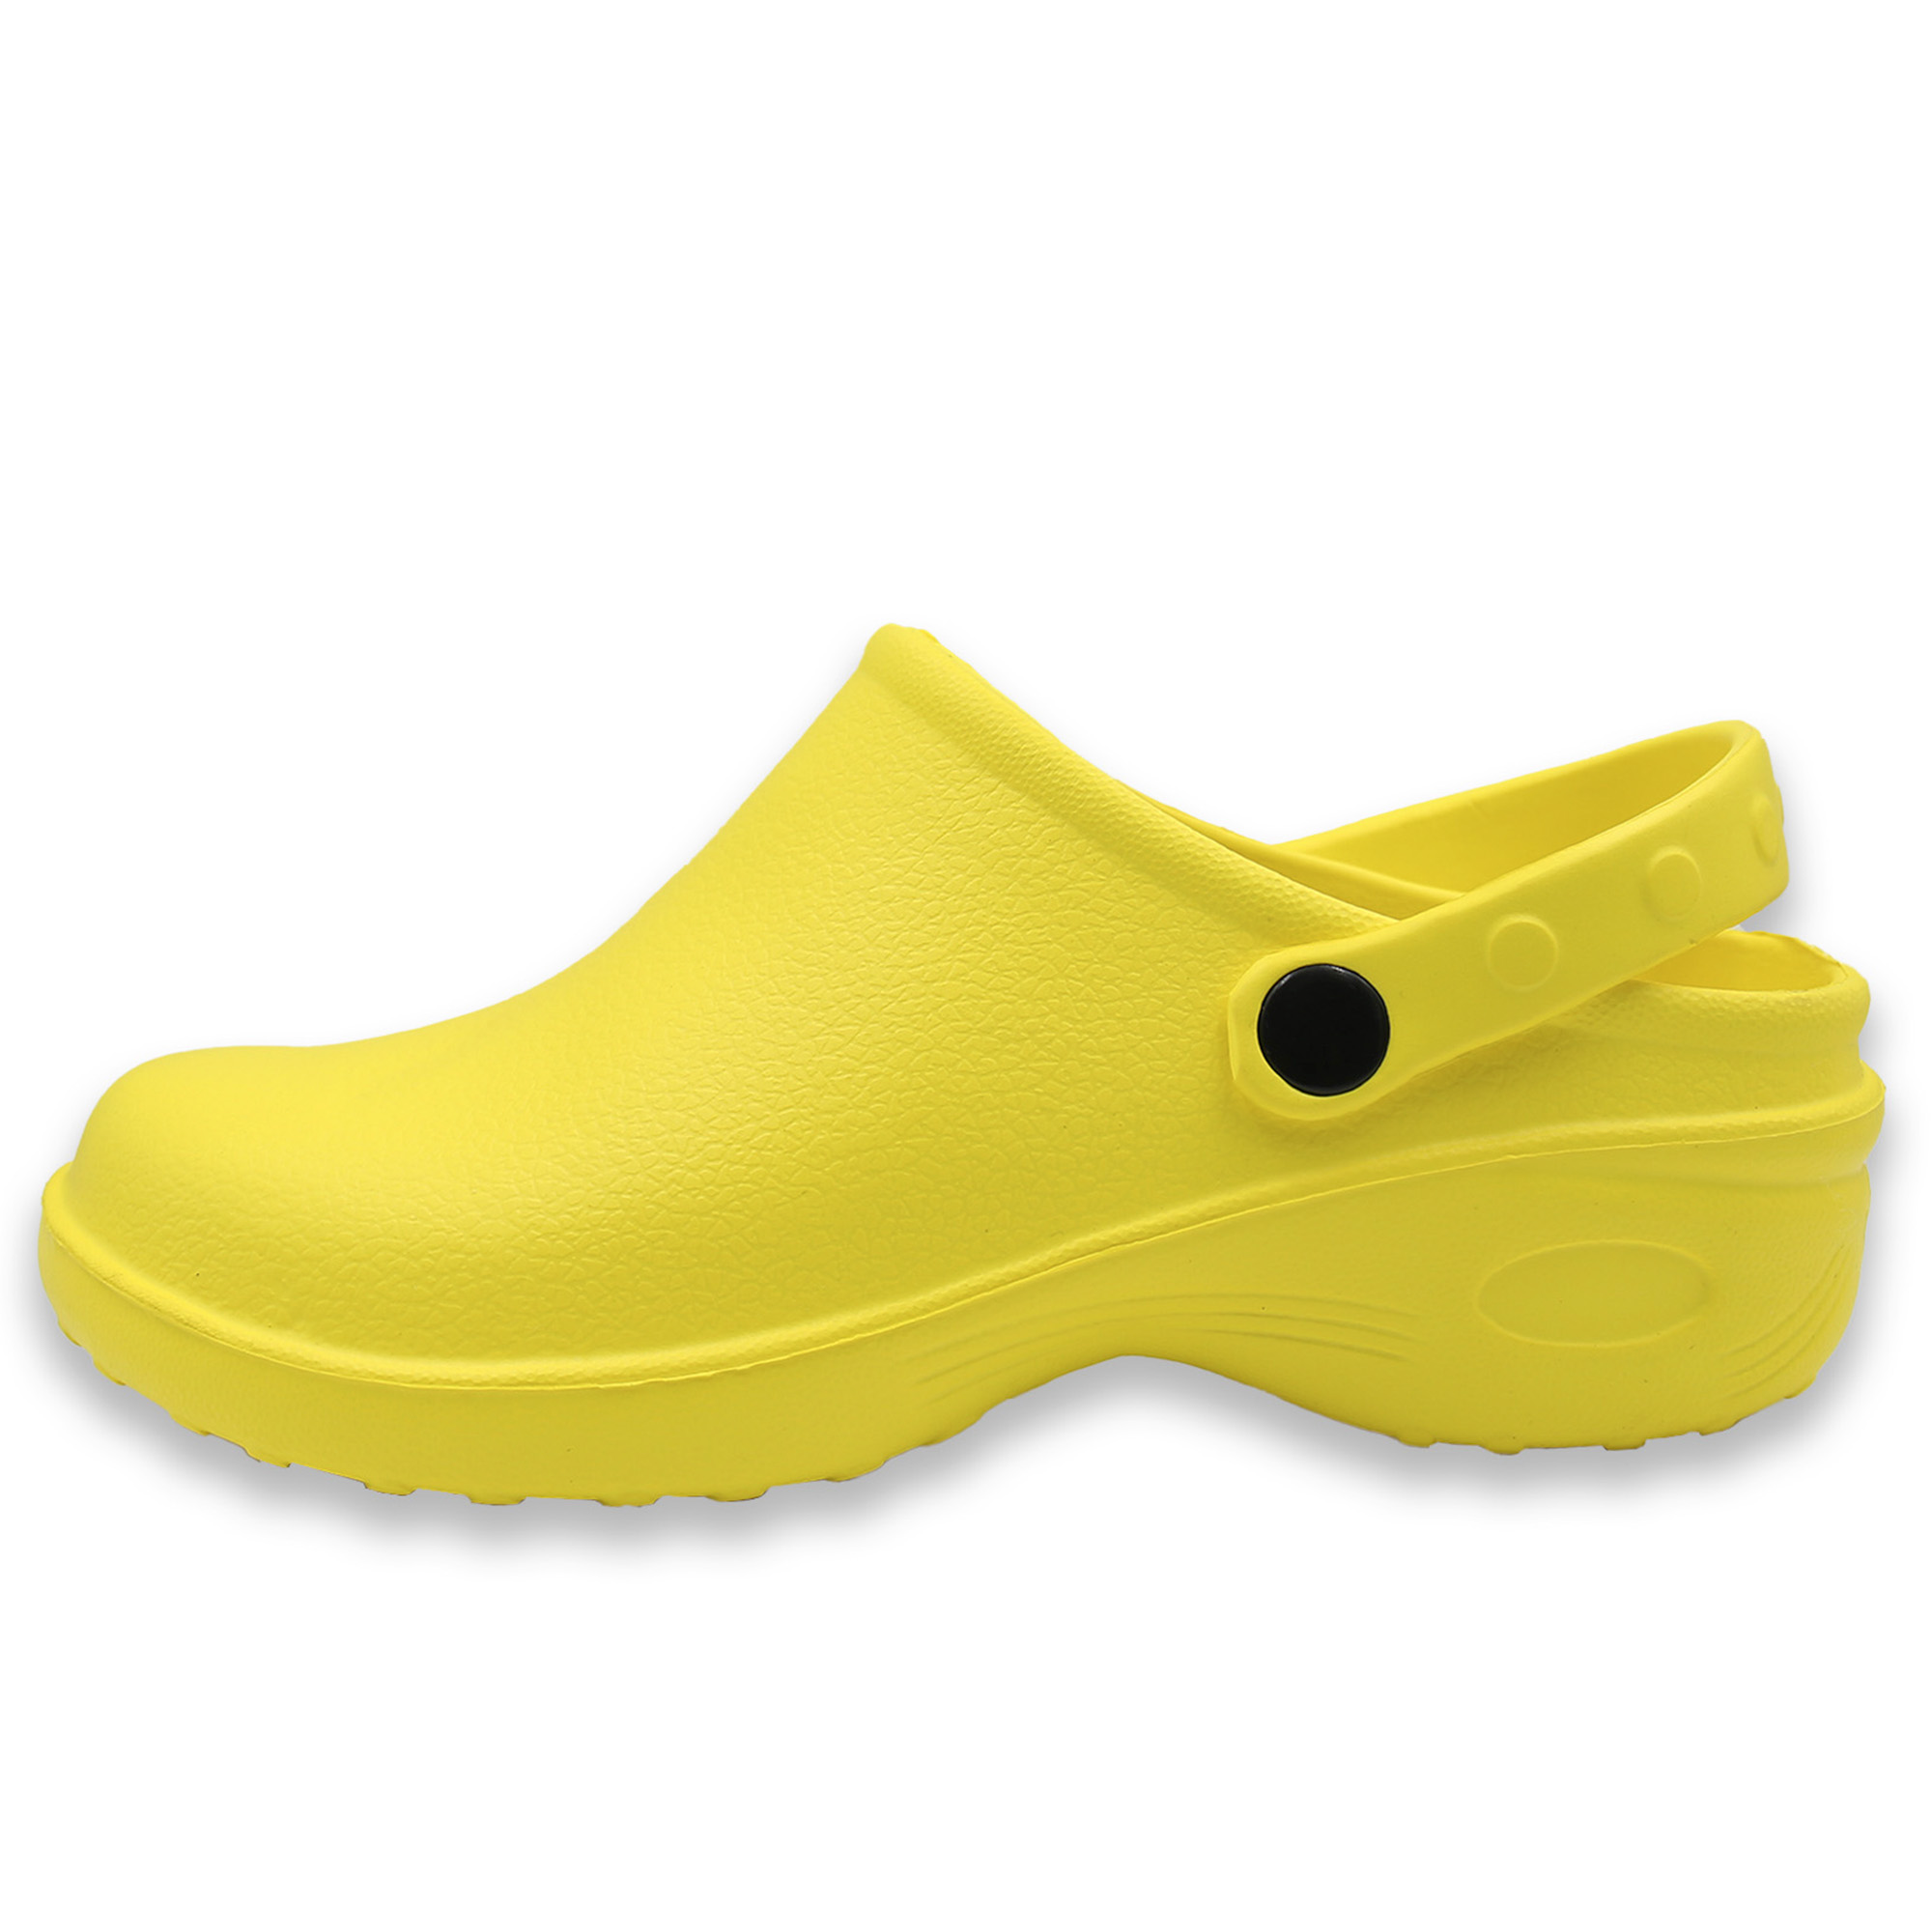 Women's Garden Clogs Nursing Shoes - Lightweight Slip-On Water Beach ...